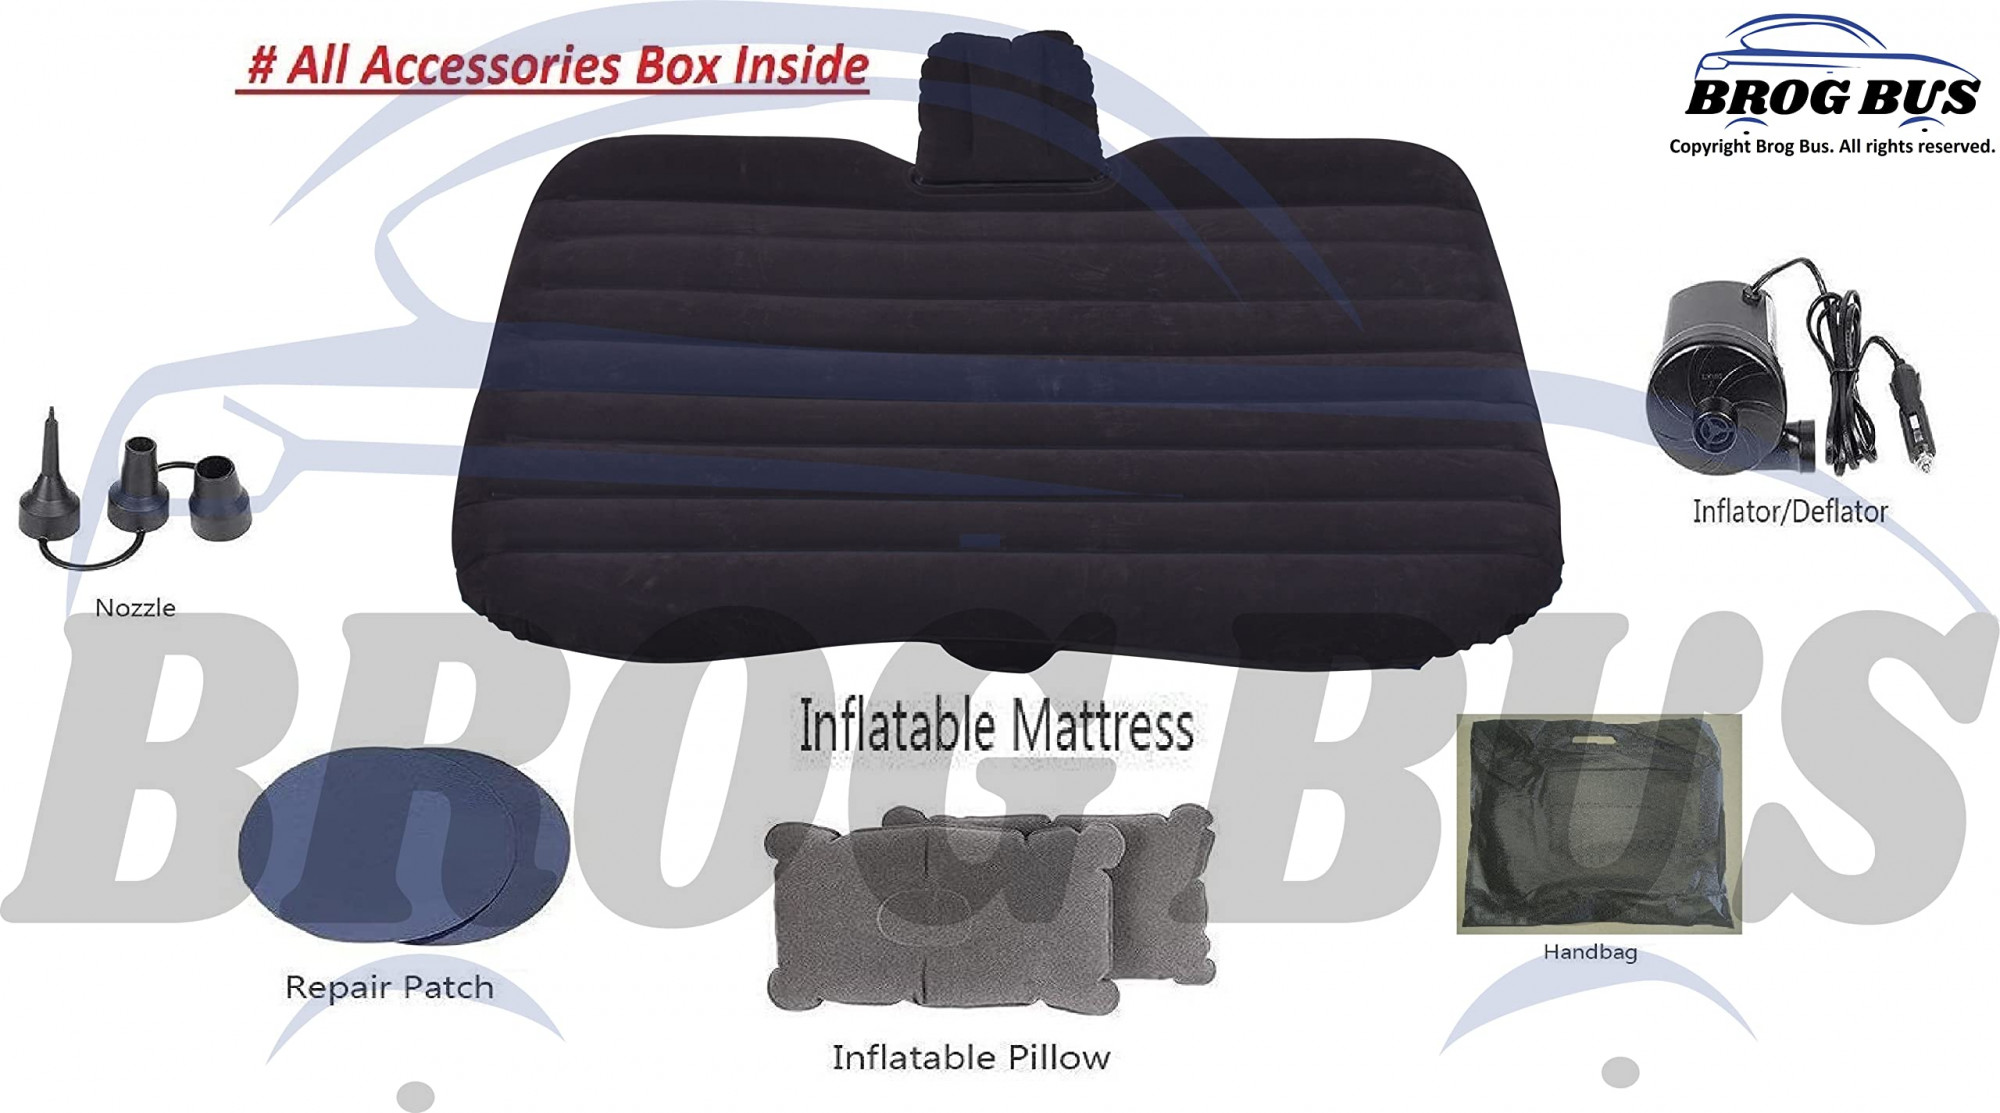 BROGBUS RAF Car Travel Vehicle Inflatable Cushion Mattress with Two Air Pillows, Car Air Pump and Repair tikki for Car Travel (Black, 53.5 x 32.2 x 16.5 Inches)